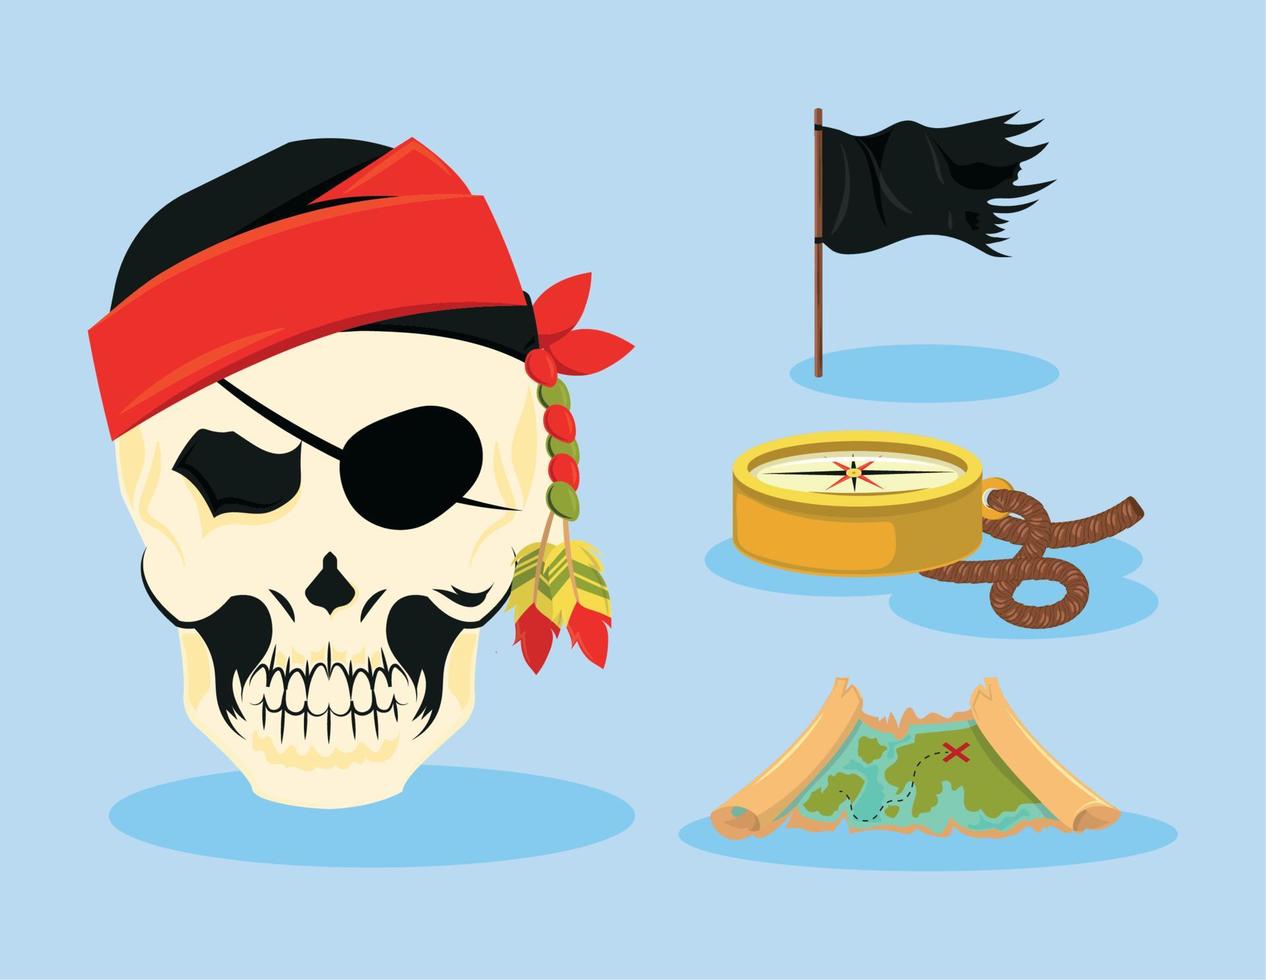 calavera pirata y bandera vector